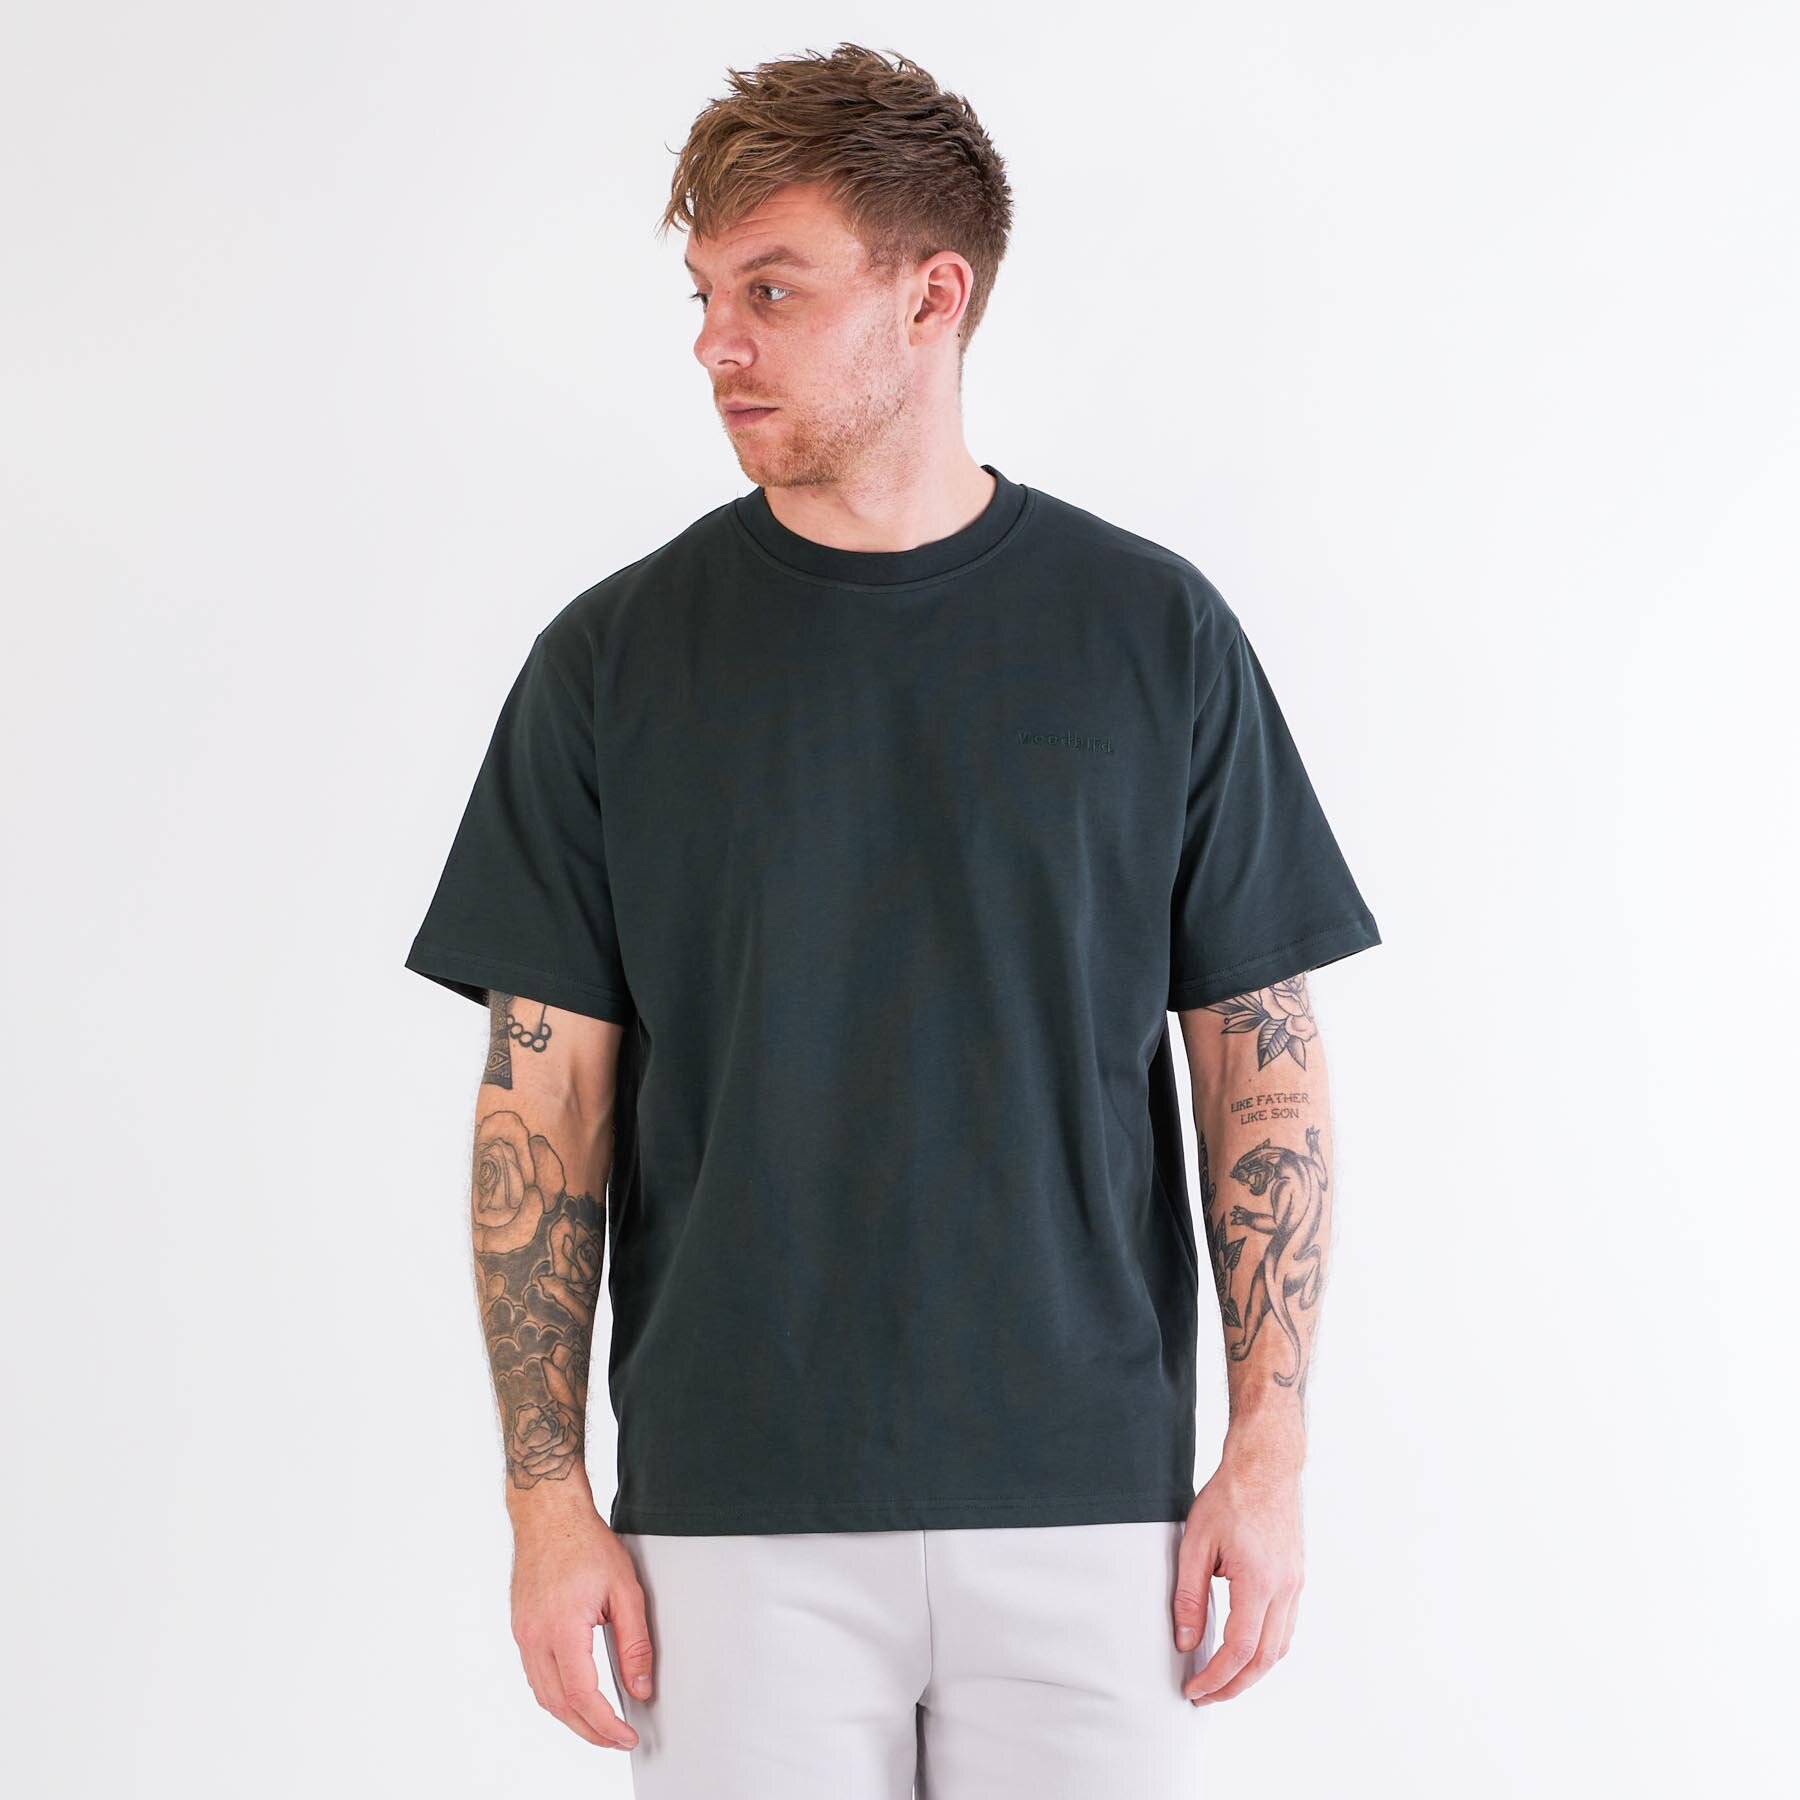 Woodbird - Baine base tee - T-shirts til mænd - Grøn - S